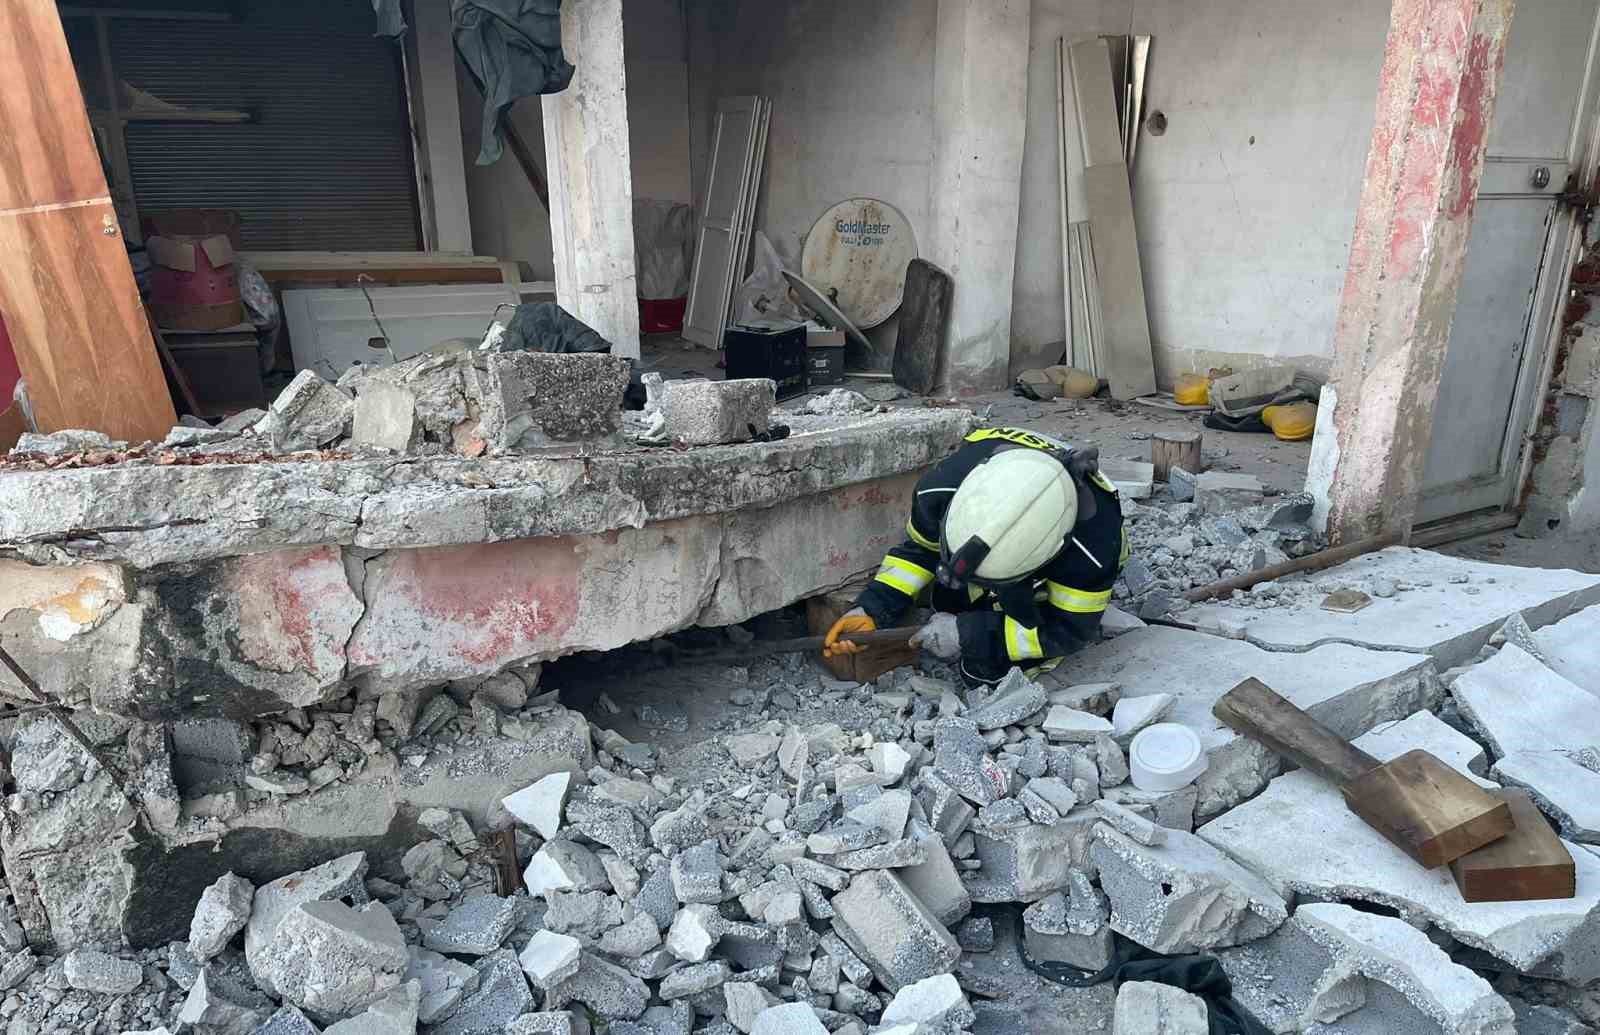 Tarsus’ta evin duvarı çöktü: 1 çocuk yaralandı
